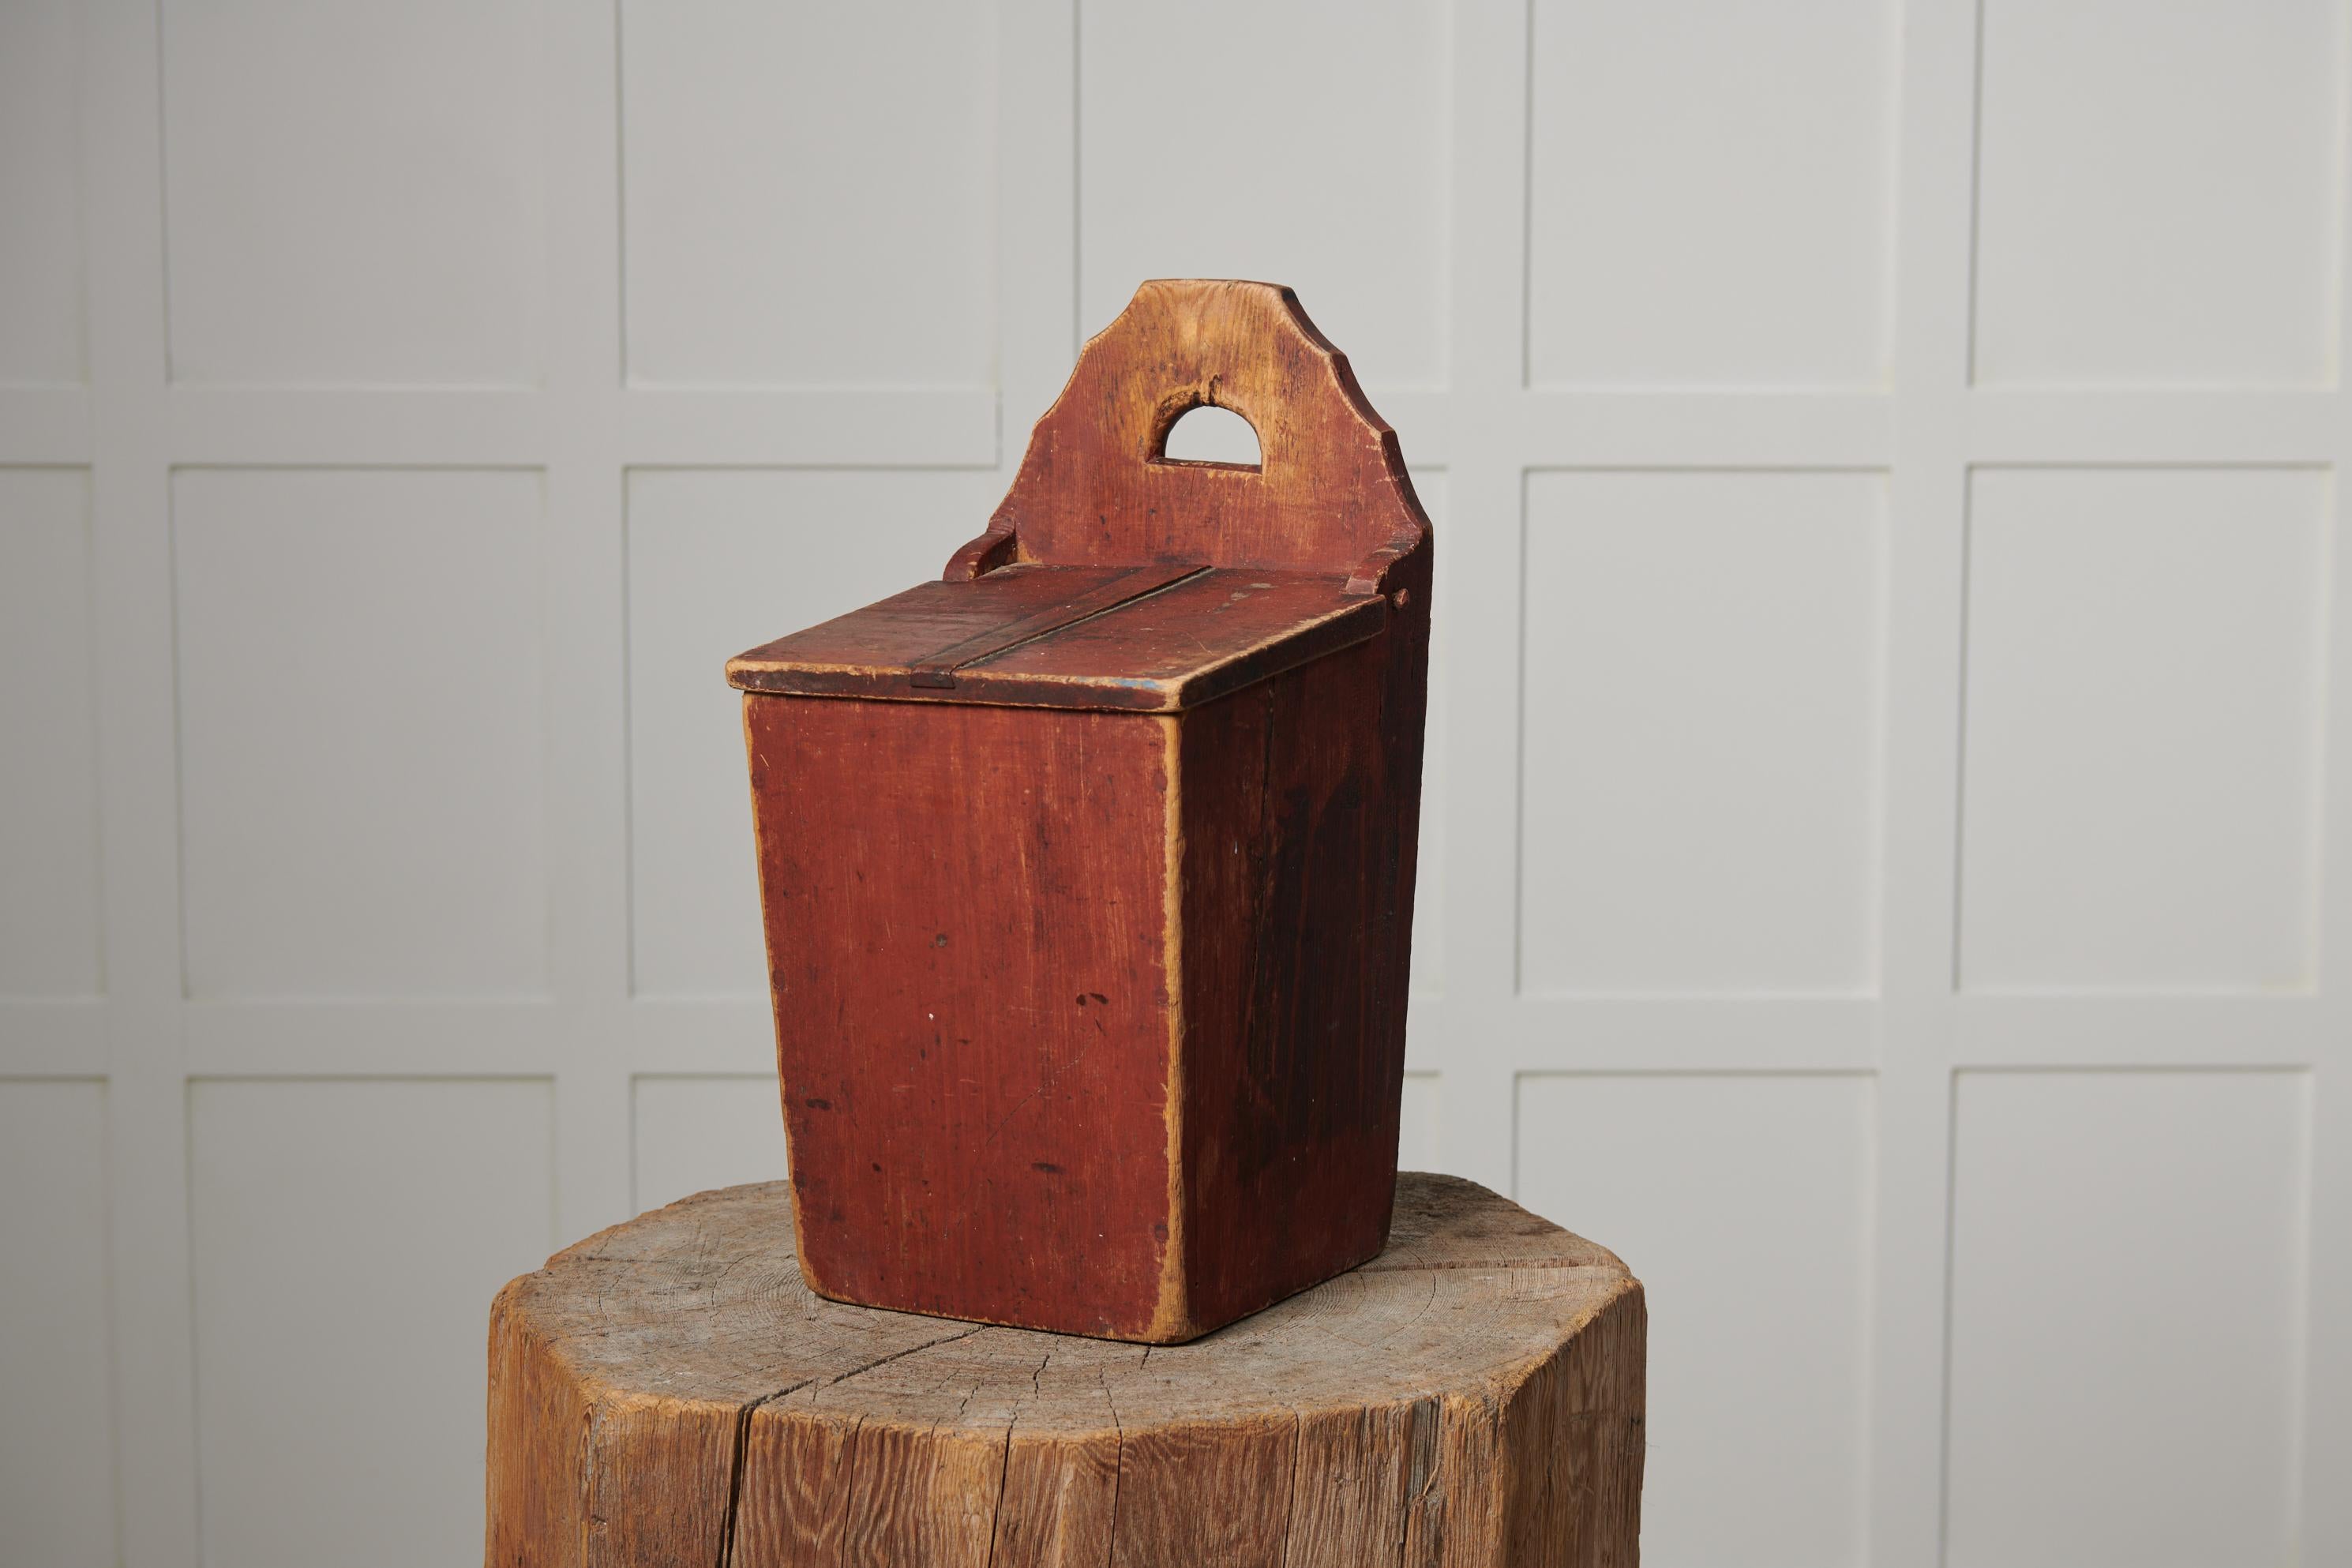 Schwedische Volkskunstkiste aus massiver schwedischer Kiefer, handgefertigt. Die Box ist im Originalzustand mit der unberührten Originalfarbe. Hergestellt in Nordschweden in den 1860er Jahren. Wahrscheinlich wurde es im Haushalt zur Aufbewahrung von